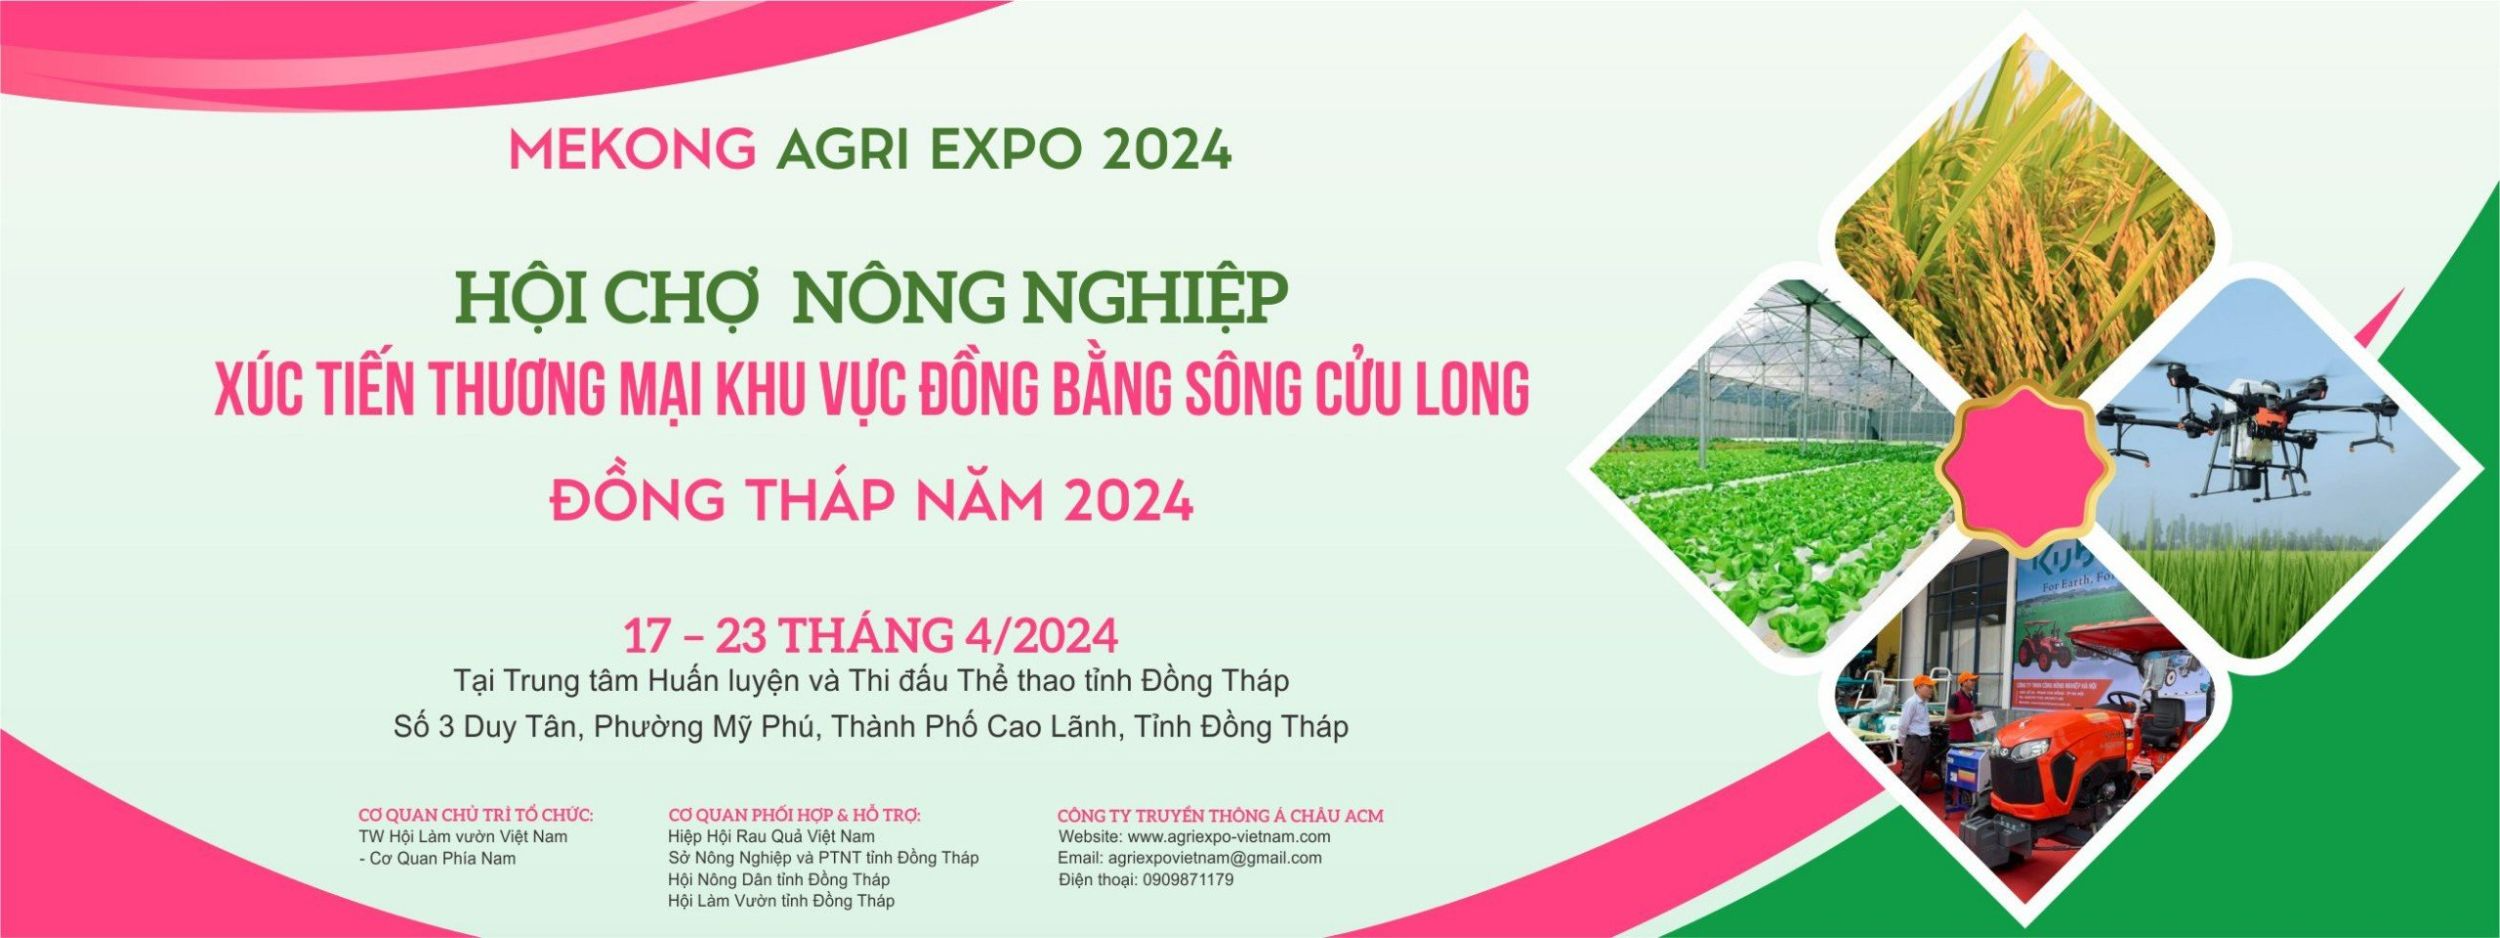 🔥KHUYẾN MÃI🔥 CHƯƠNG TRÌNH KHUYẾN MÃI ĐẶC BIỆT TẠI HỘI CHỢ MEKONG AGRI EXPO 2024